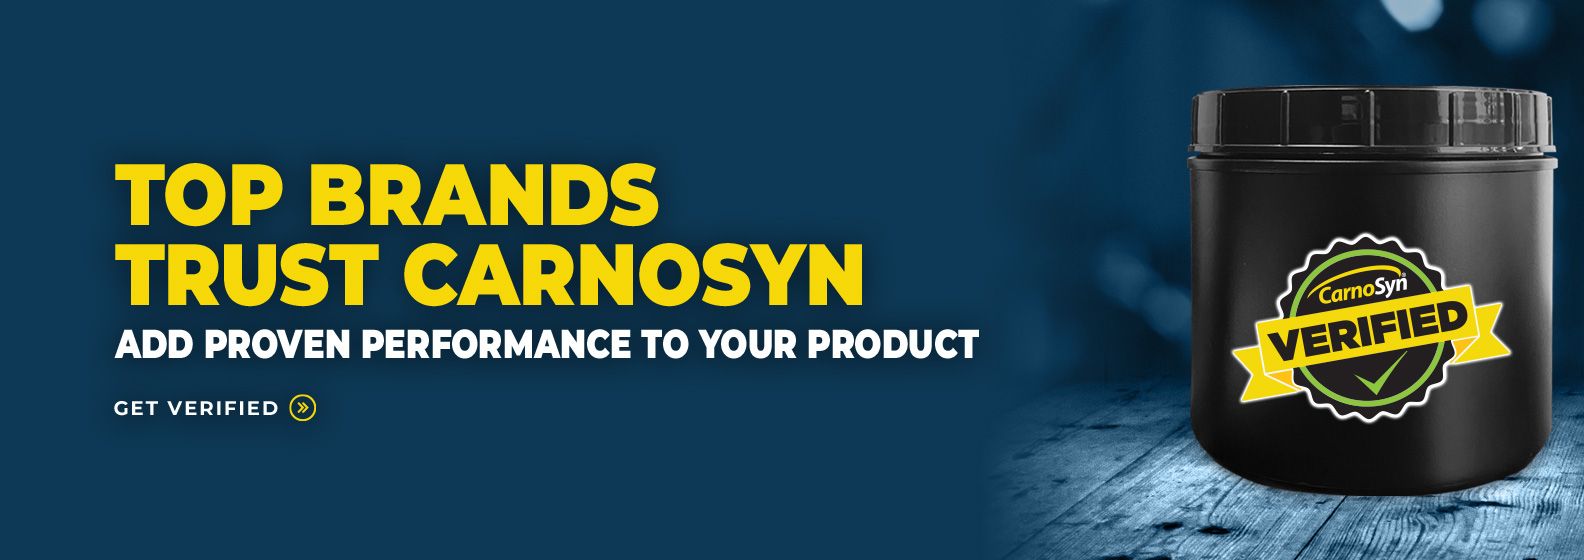 Top Brands Trust CarnoSyn